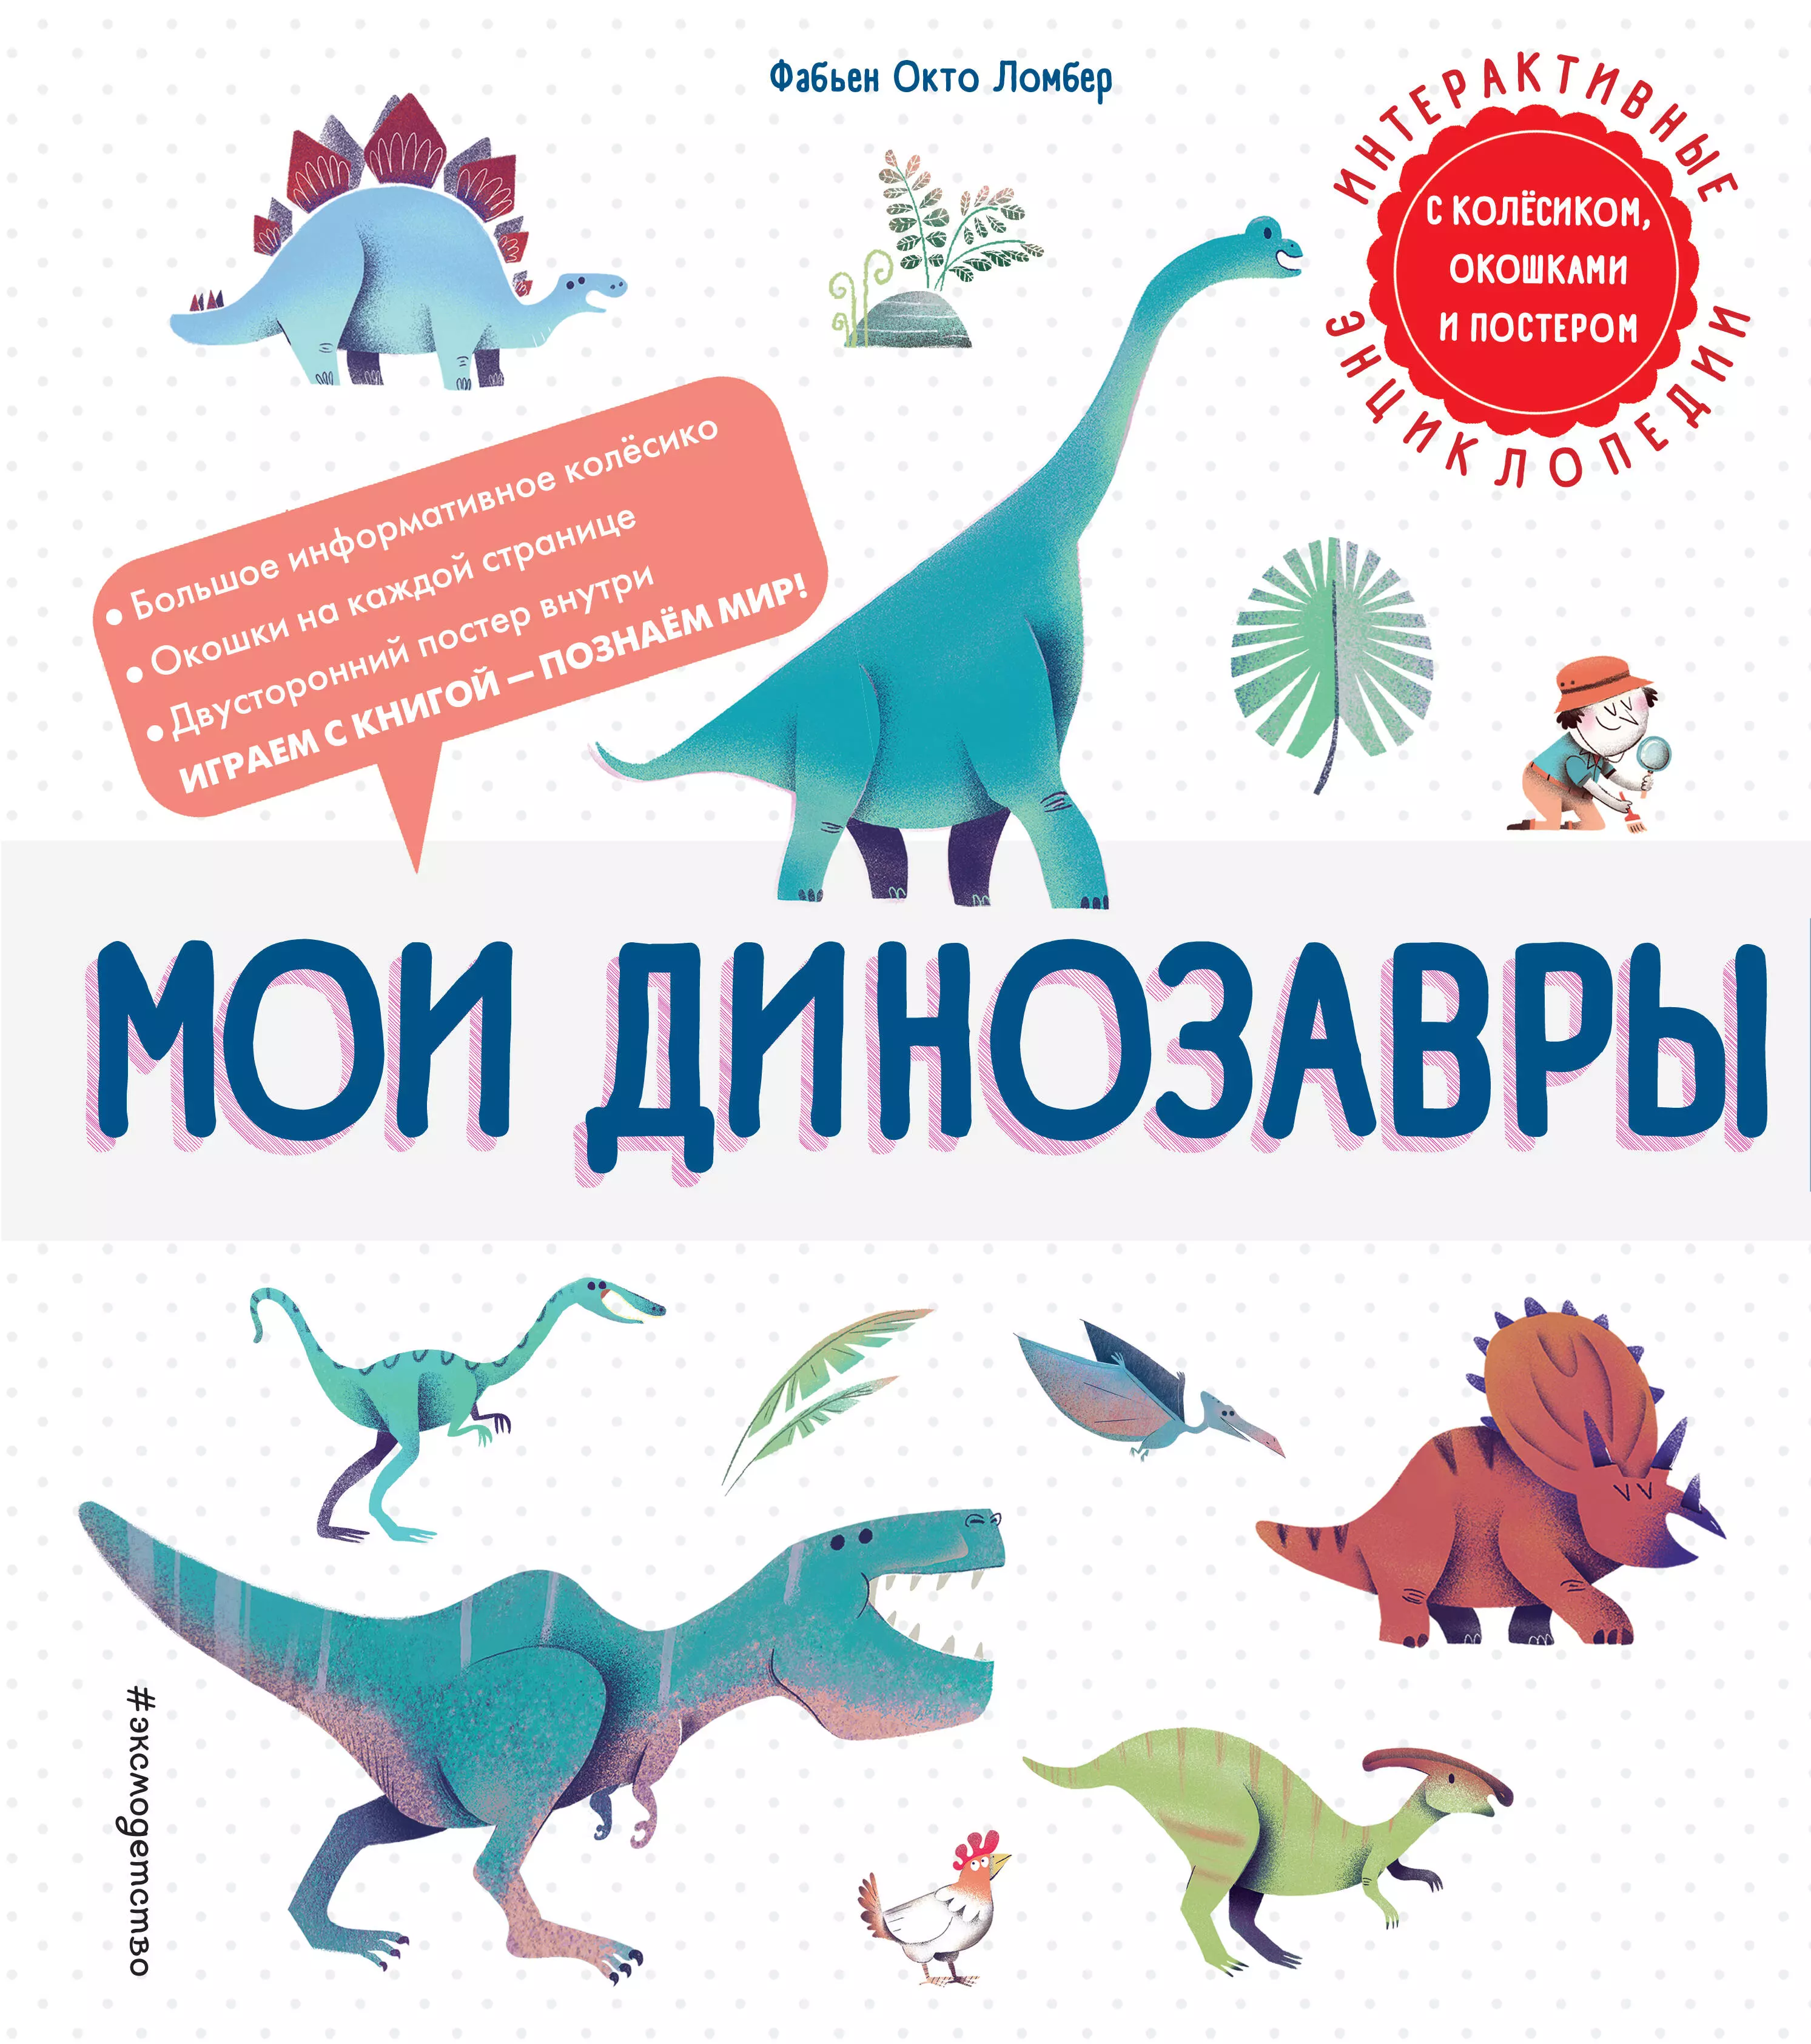 Ломбер Фабьен Окто Мои динозавры. Интерактивные энциклопедии с колесиком, окошком и постером мои динозавры ломбер ф